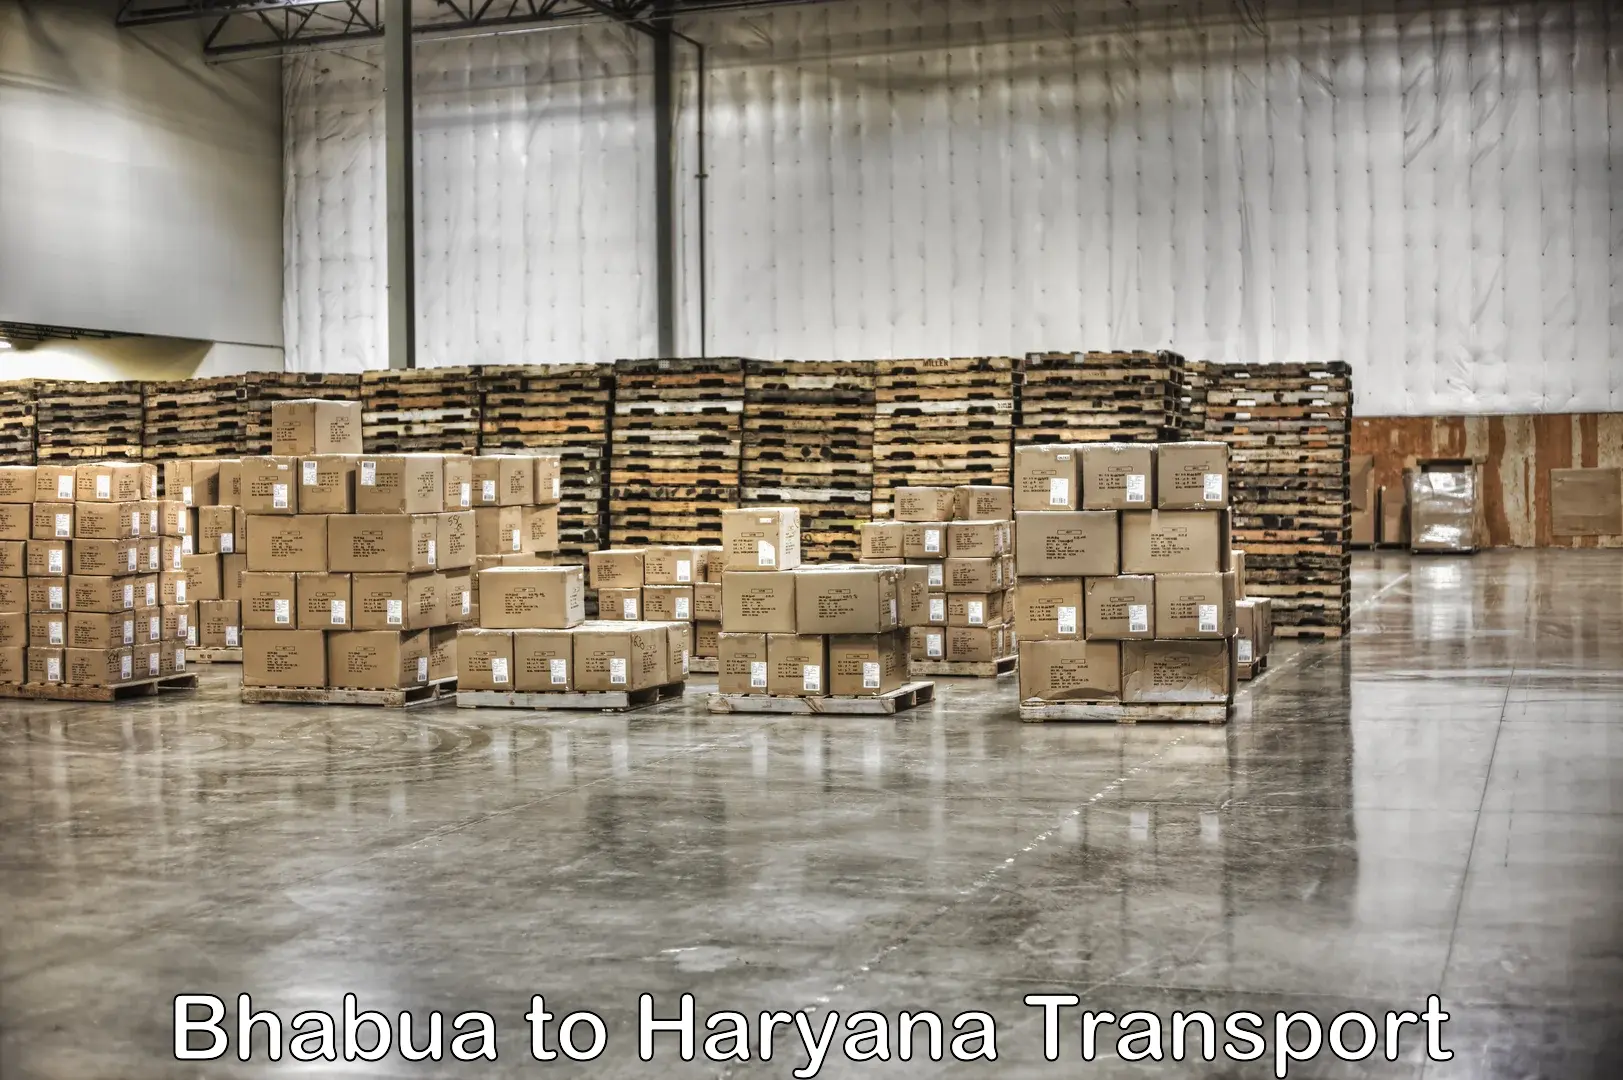 Daily transport service Bhabua to Haryana